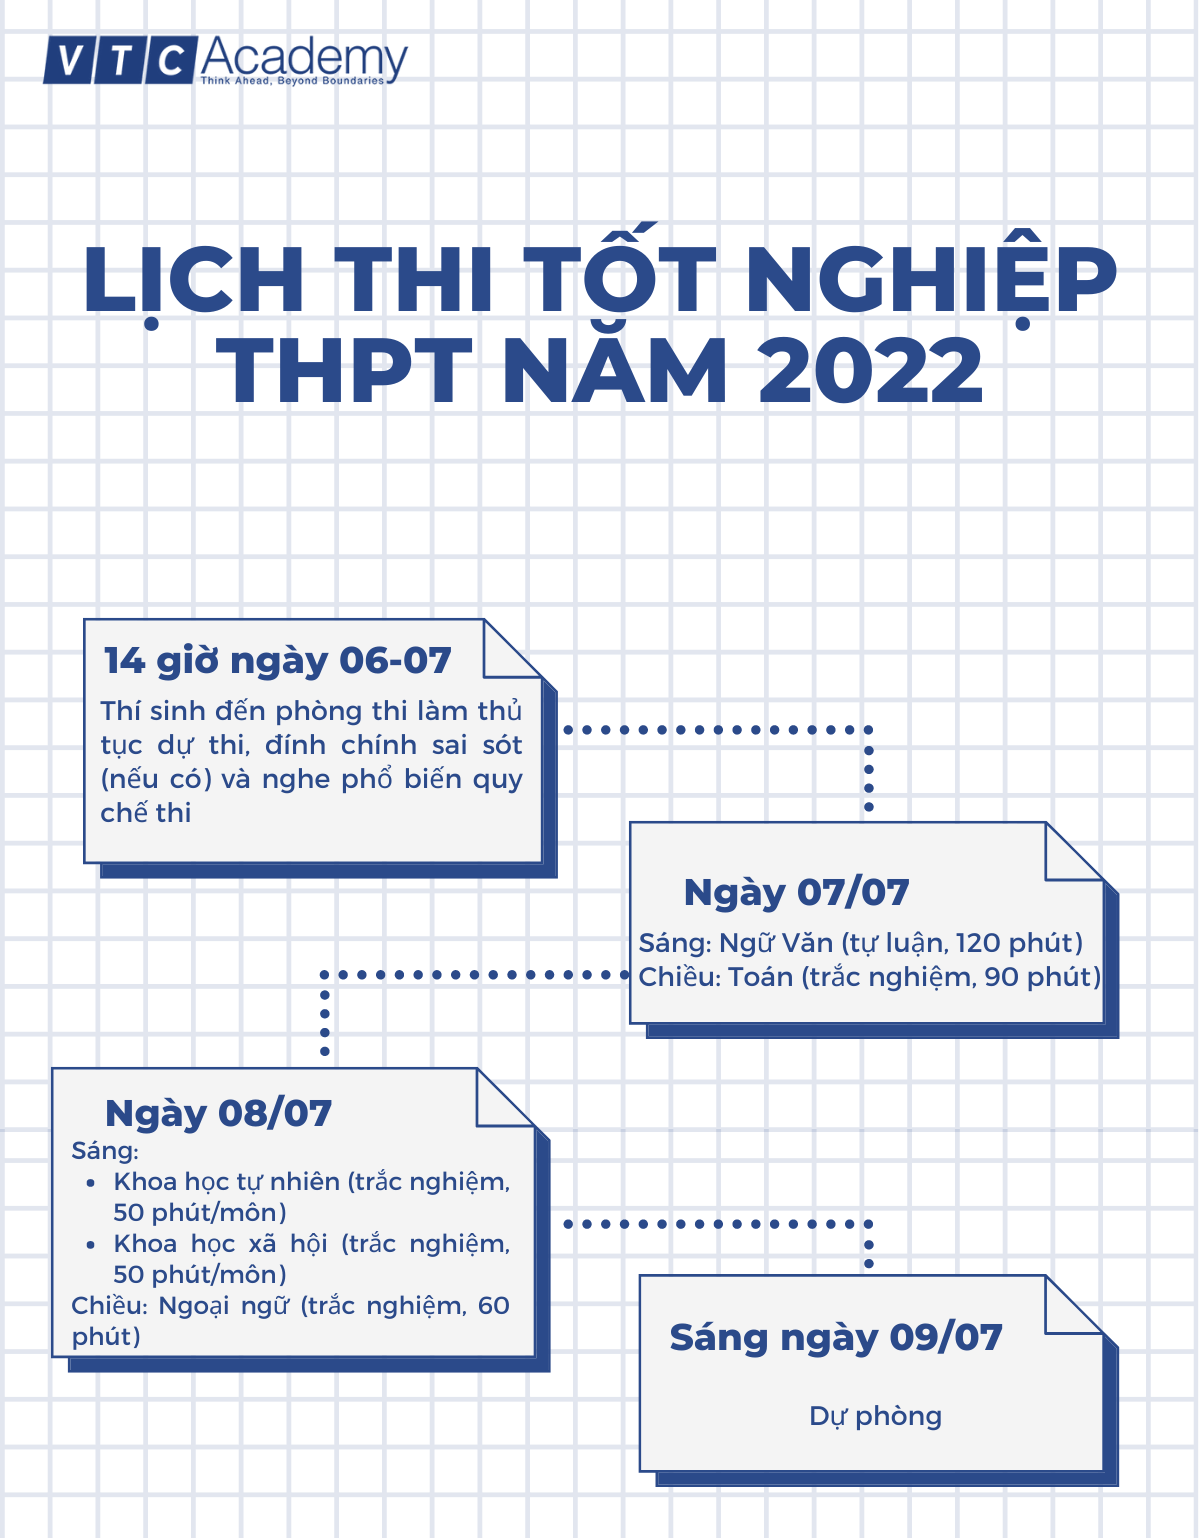 lich-thi-tot-nghiep-thpt-nam-2022